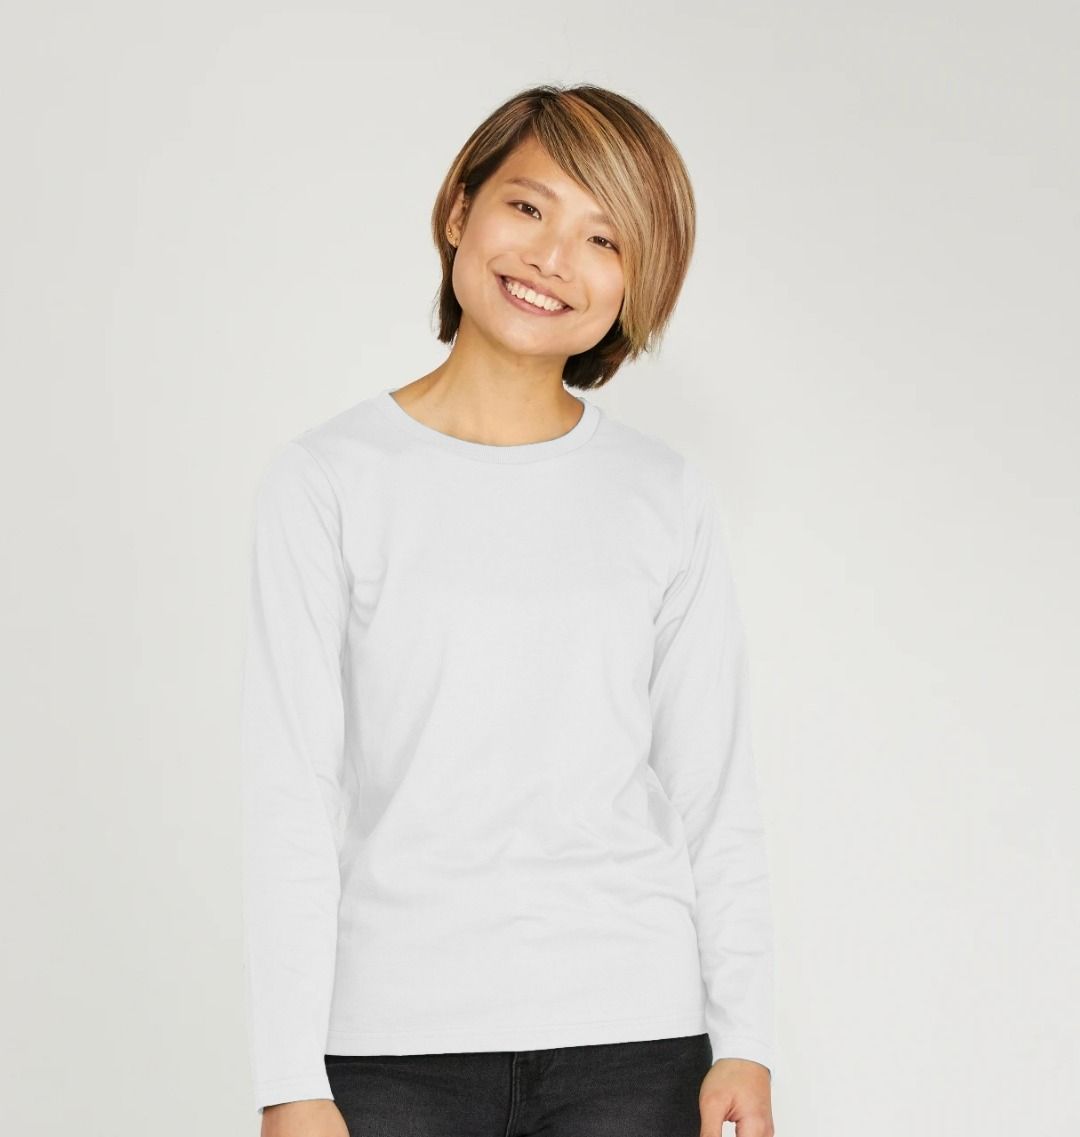 Women's Plain Long Sleeve T-shirt